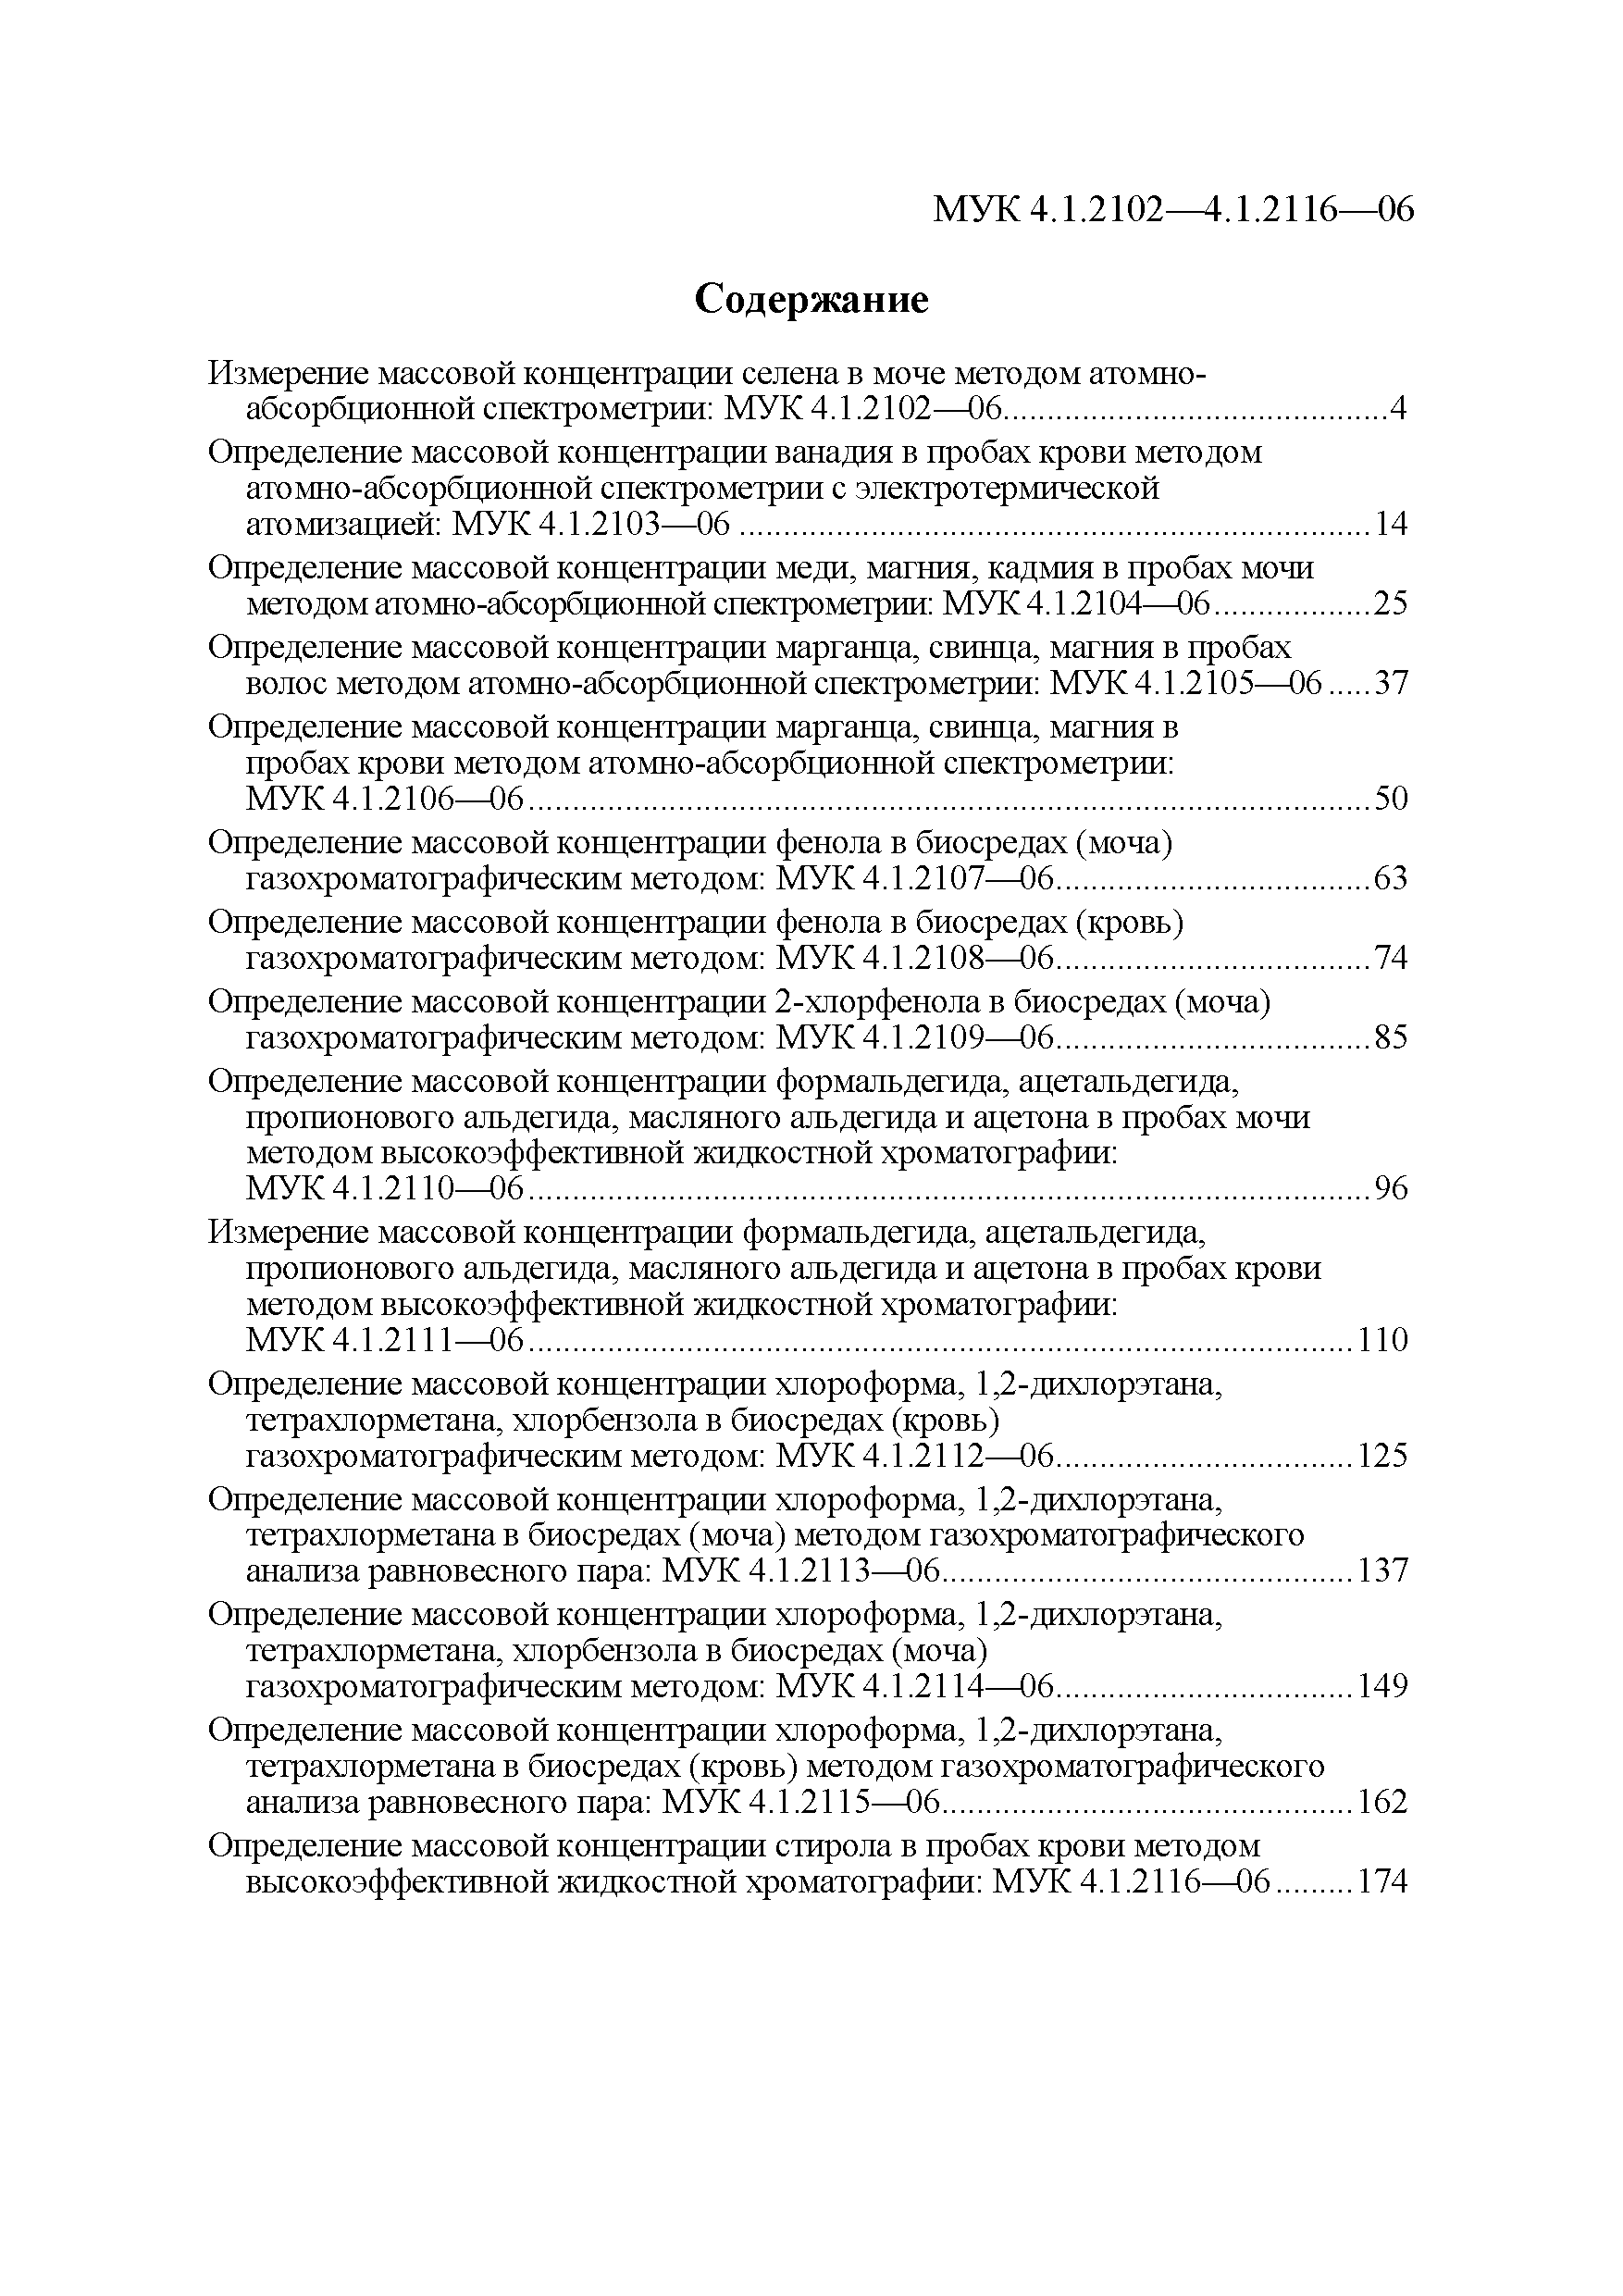 МУК 4.1.2112-06